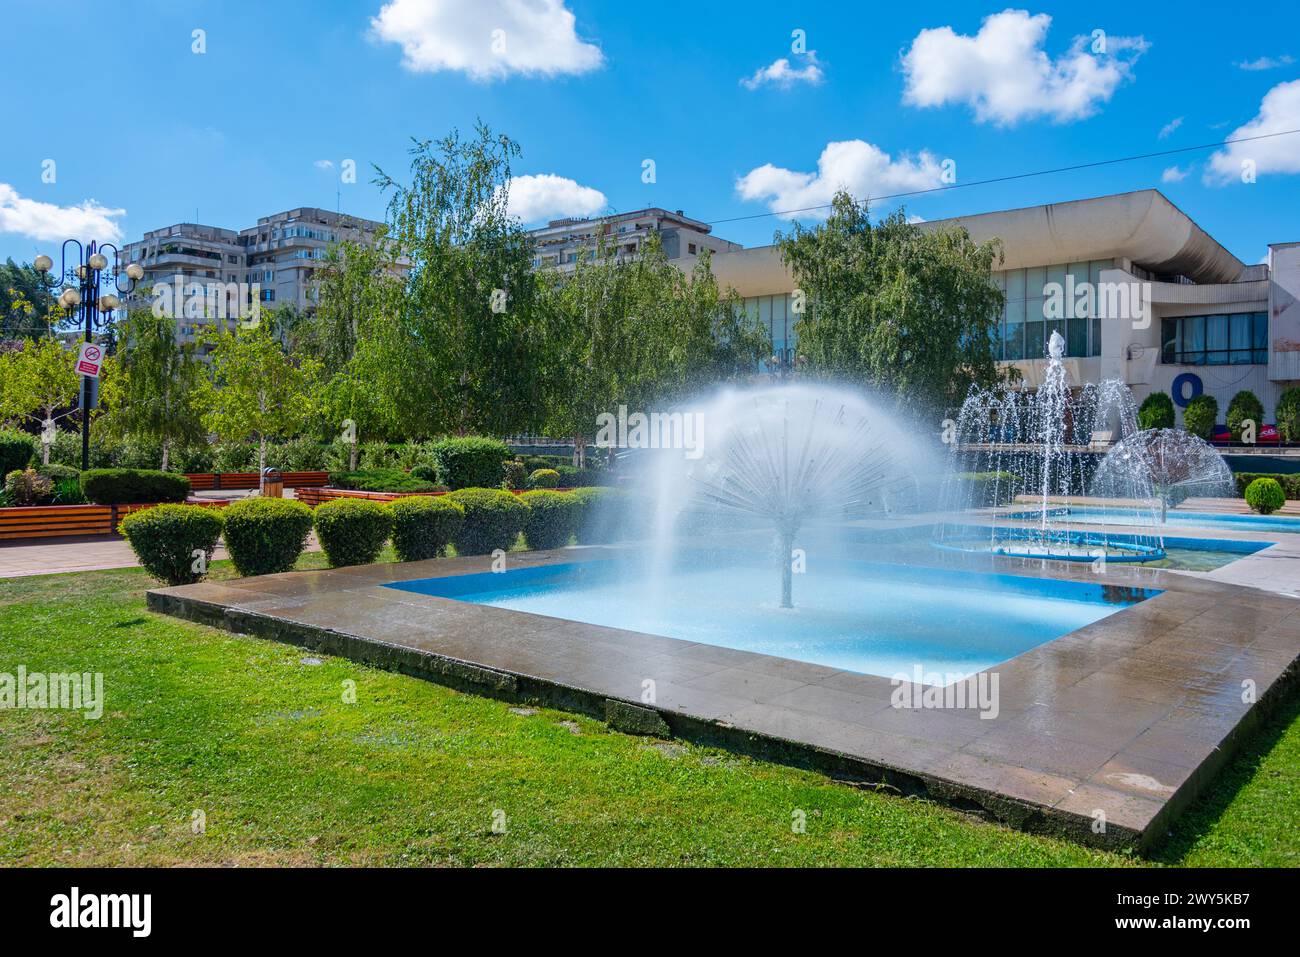 Fountain in the center of Ploiesti in Romania Stock Photo